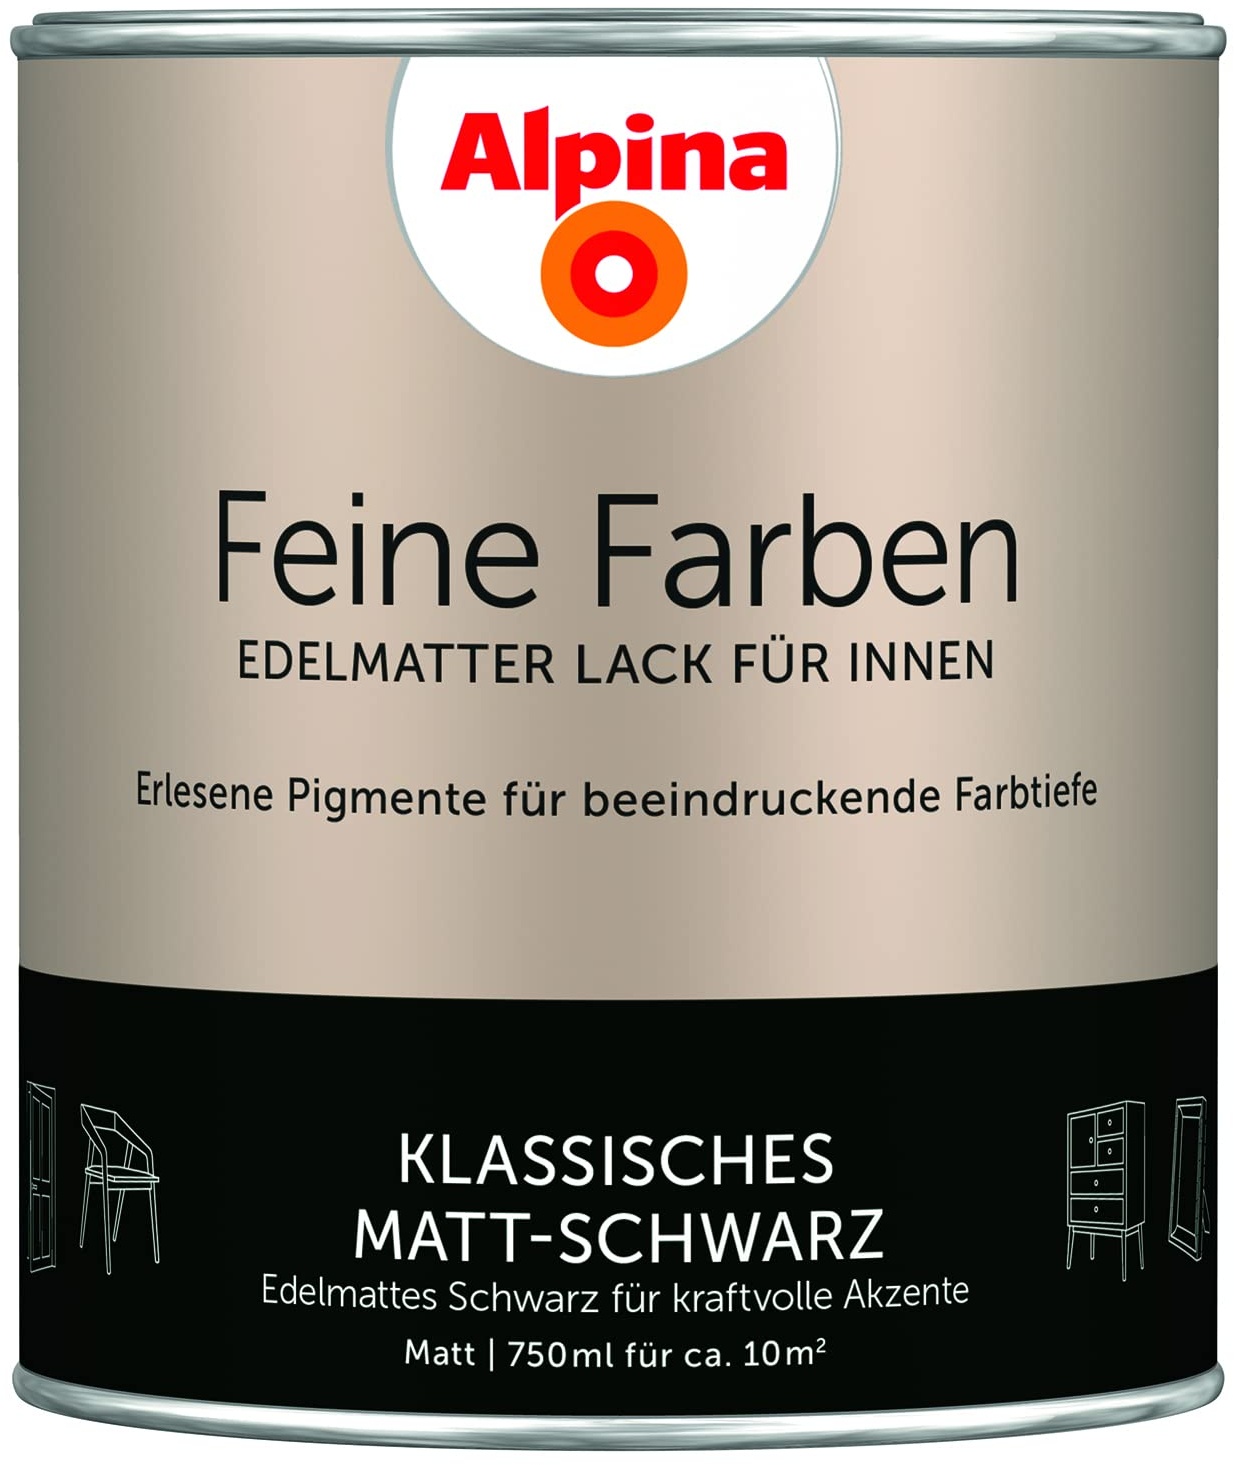 Alpina Feine Farben Lack Klassisches Matt-Schwarz 750ml